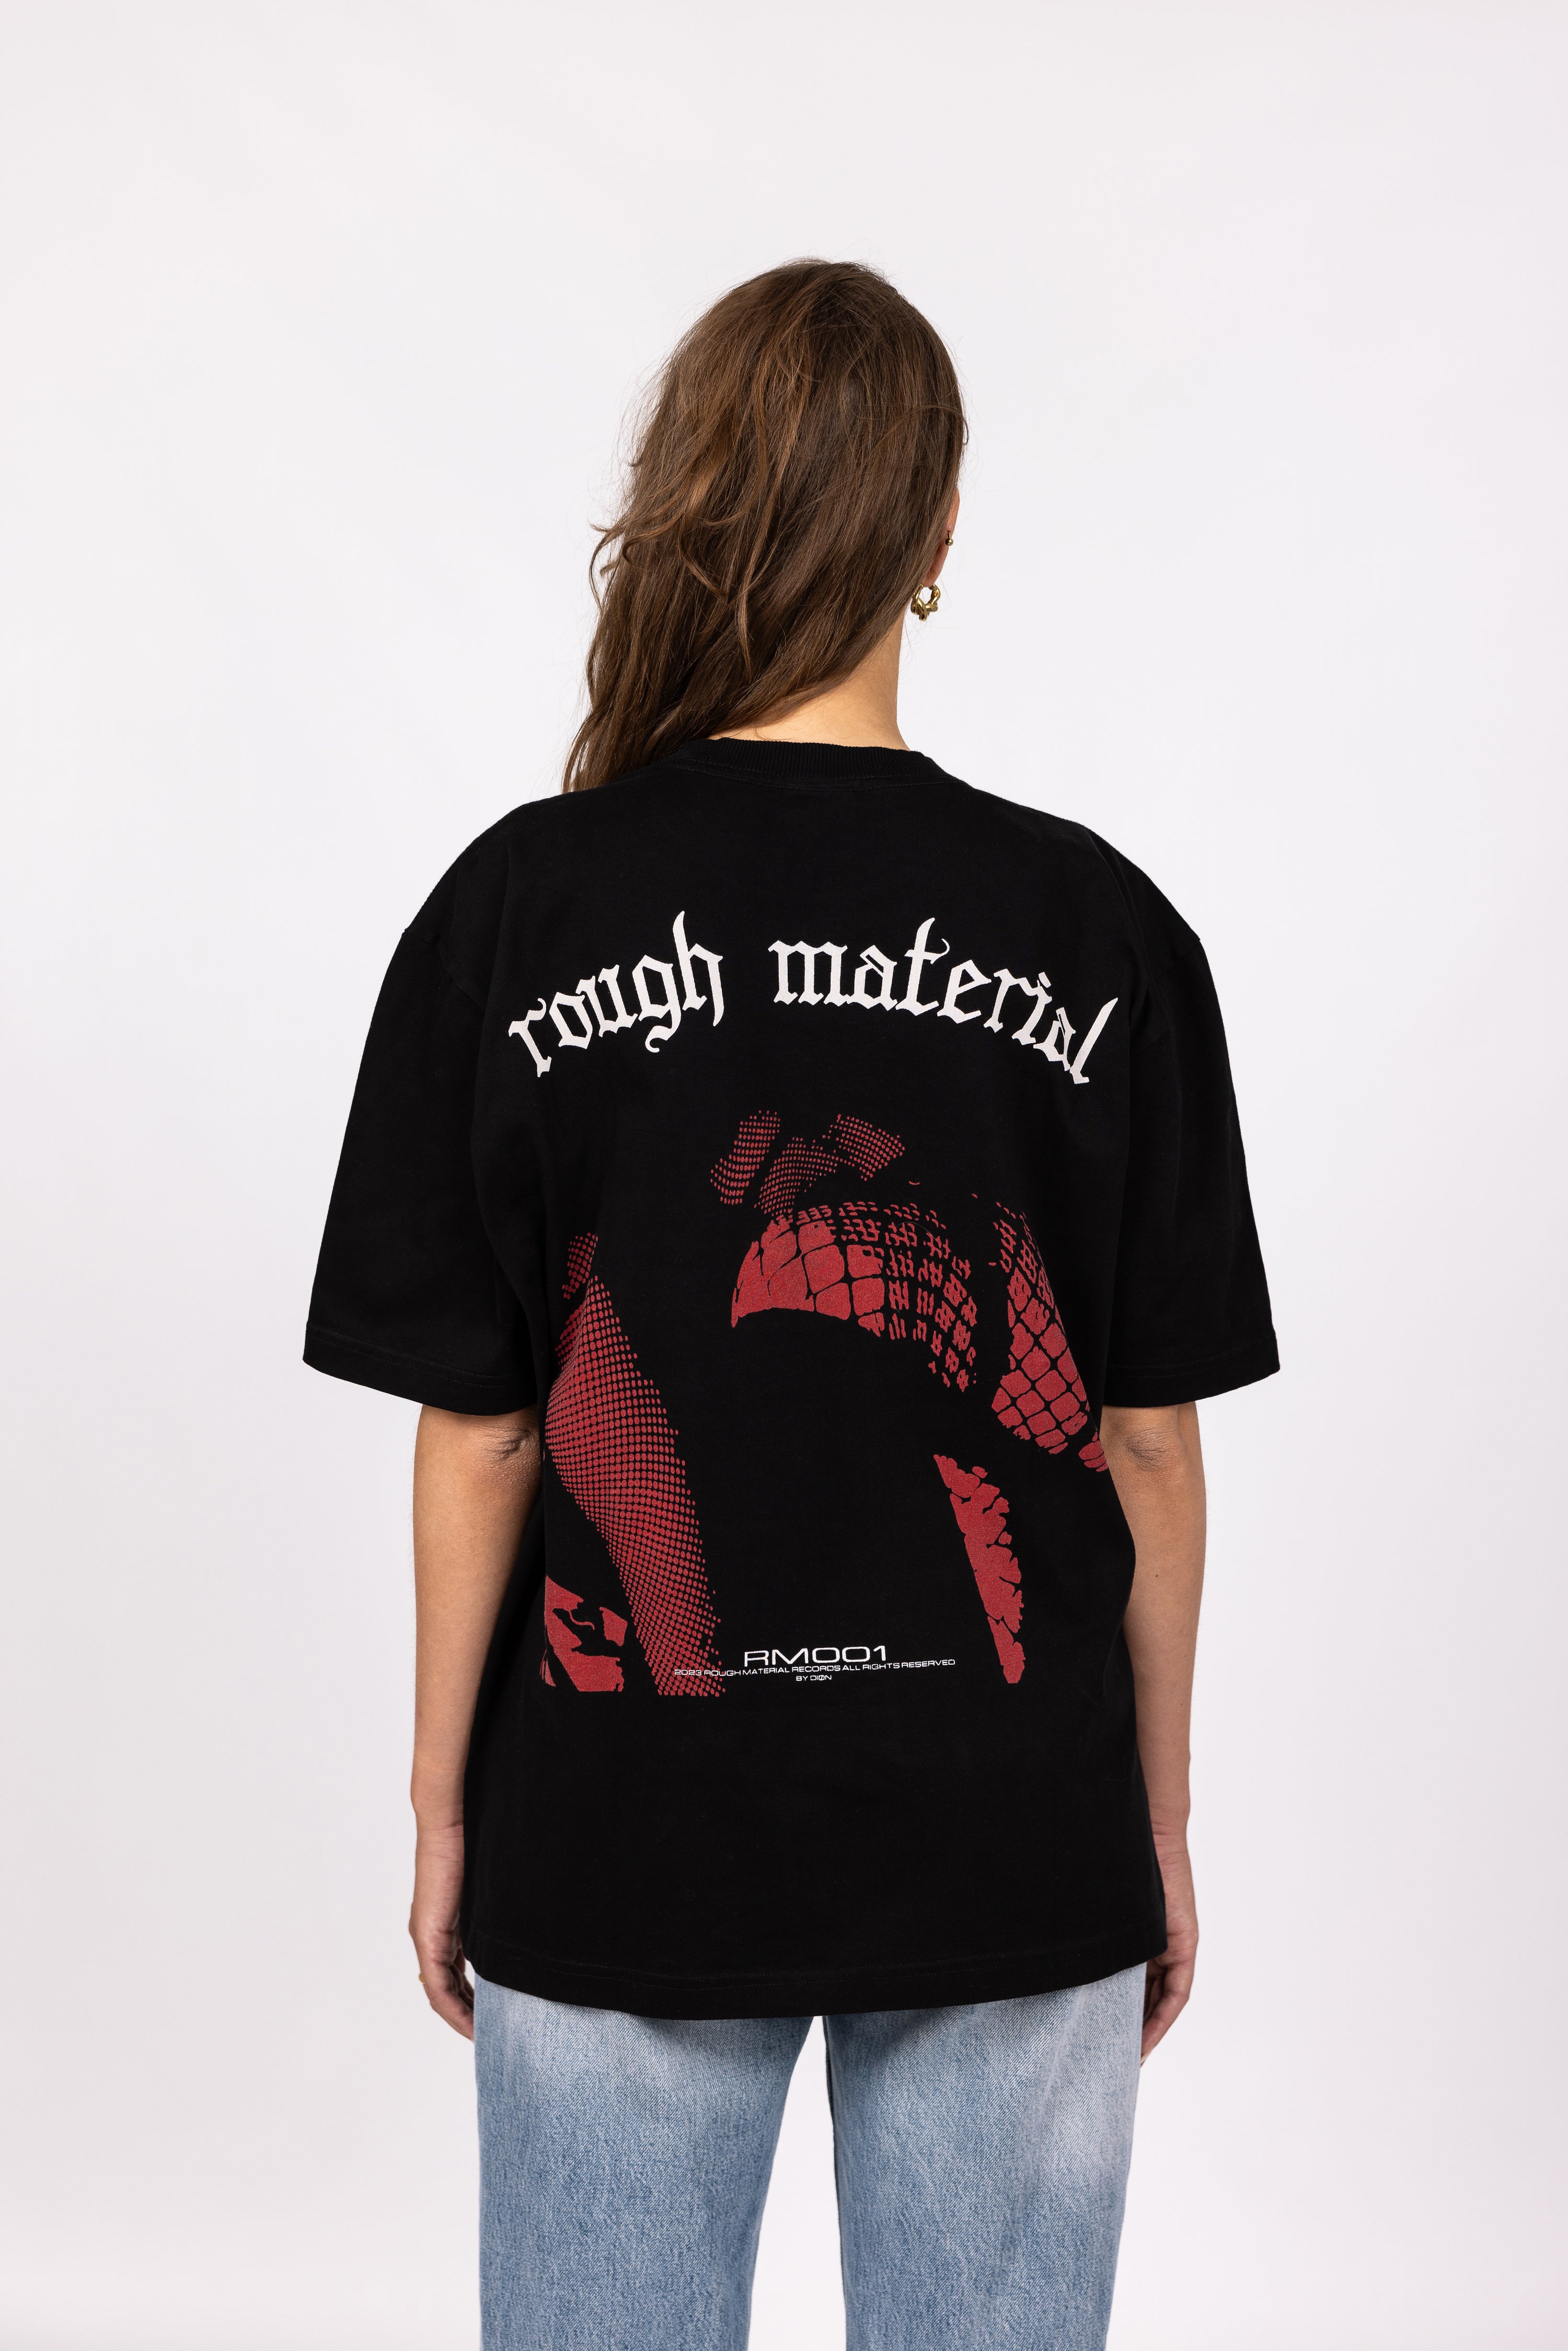 RM001 T-shirt Black